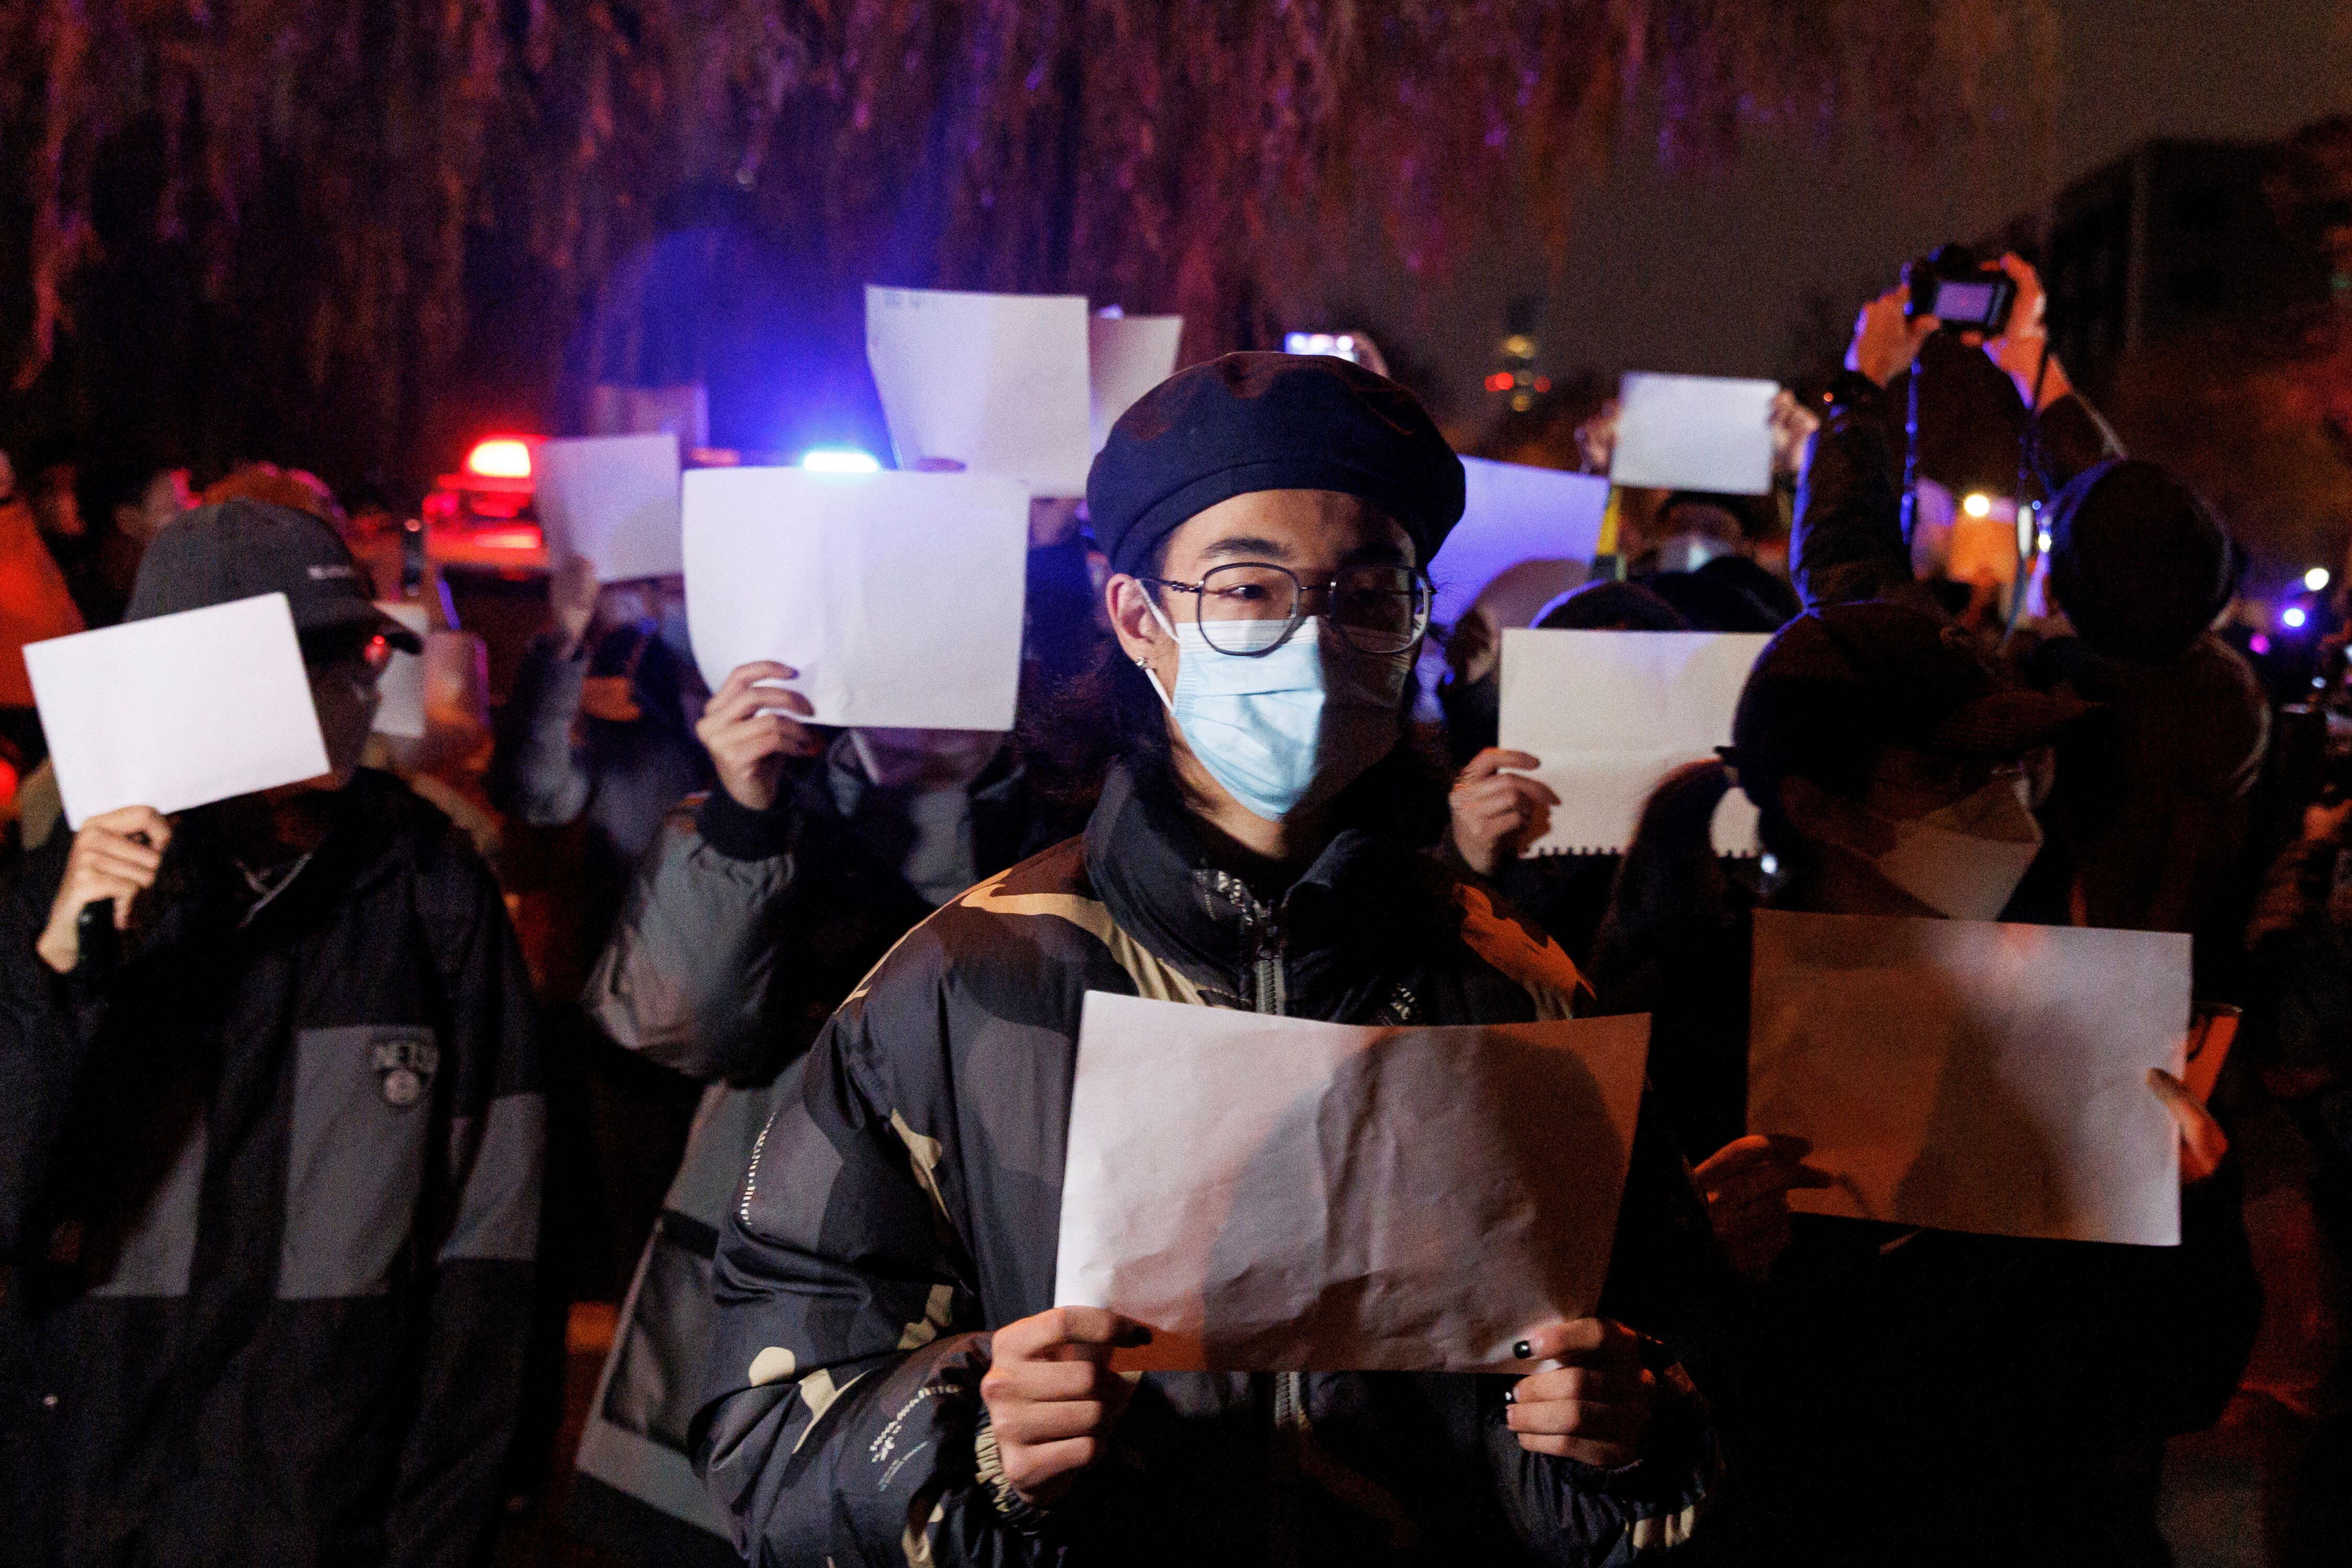 Las hojas en blanco, simbolo de la lucha contra la censura en China (REUTERS/Thomas Peter)